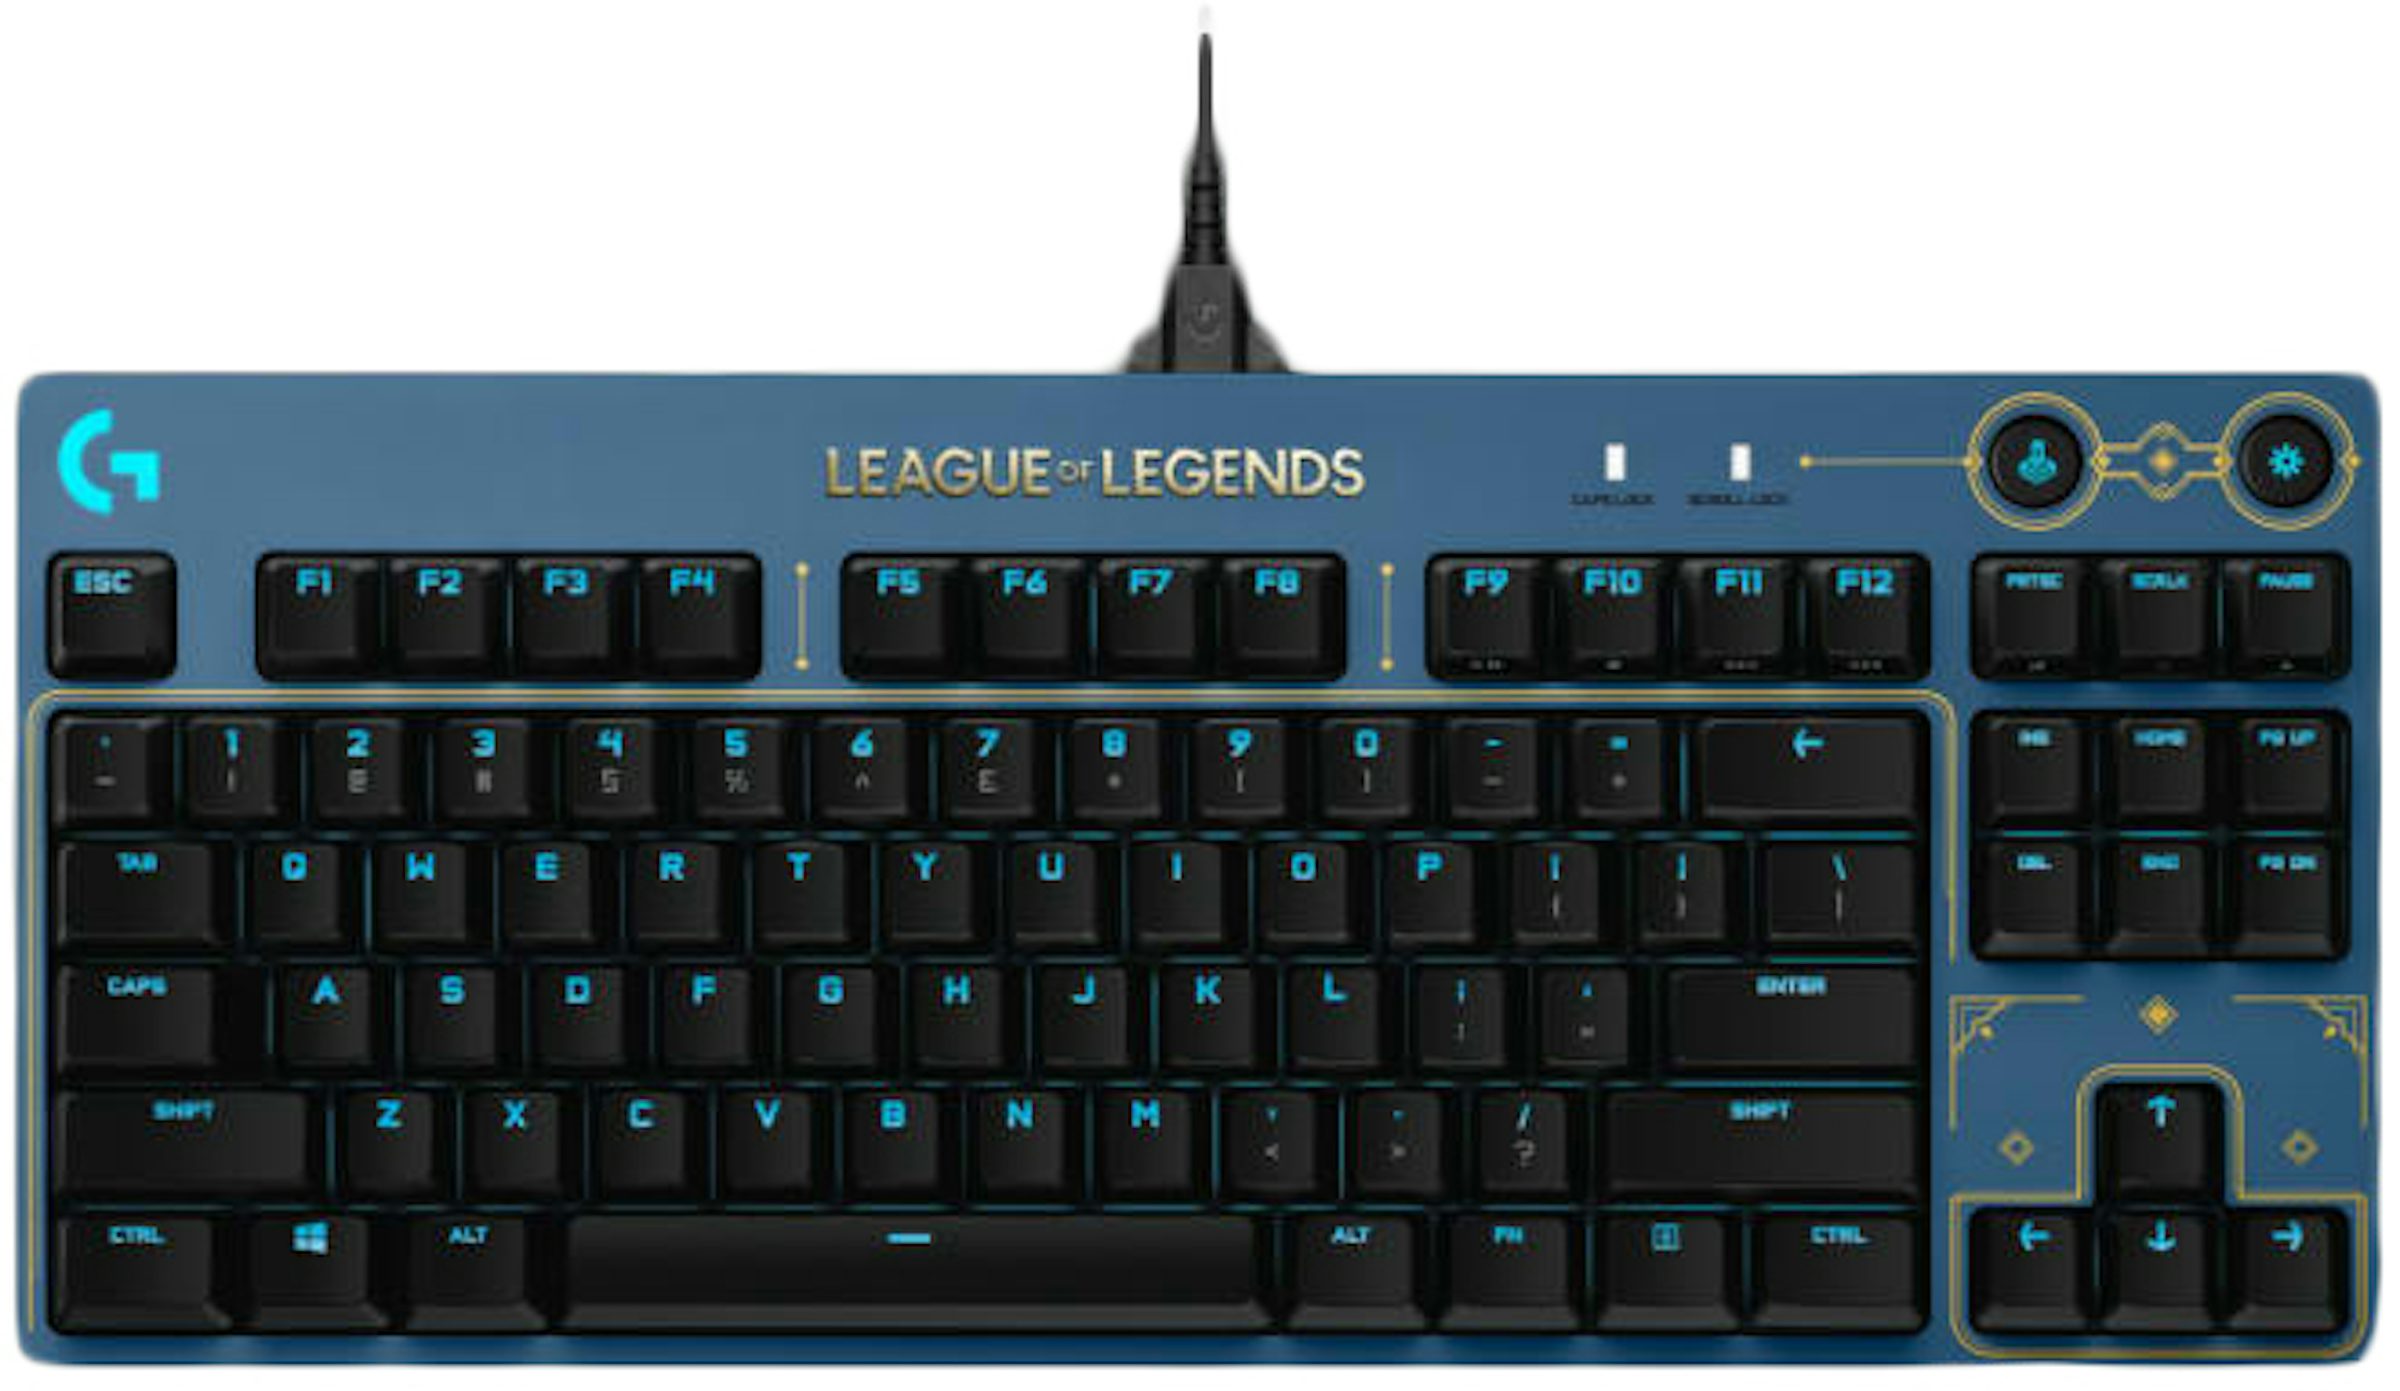 Logitech G Pro League Of Legends Keyboard Spare Replacement Tilt